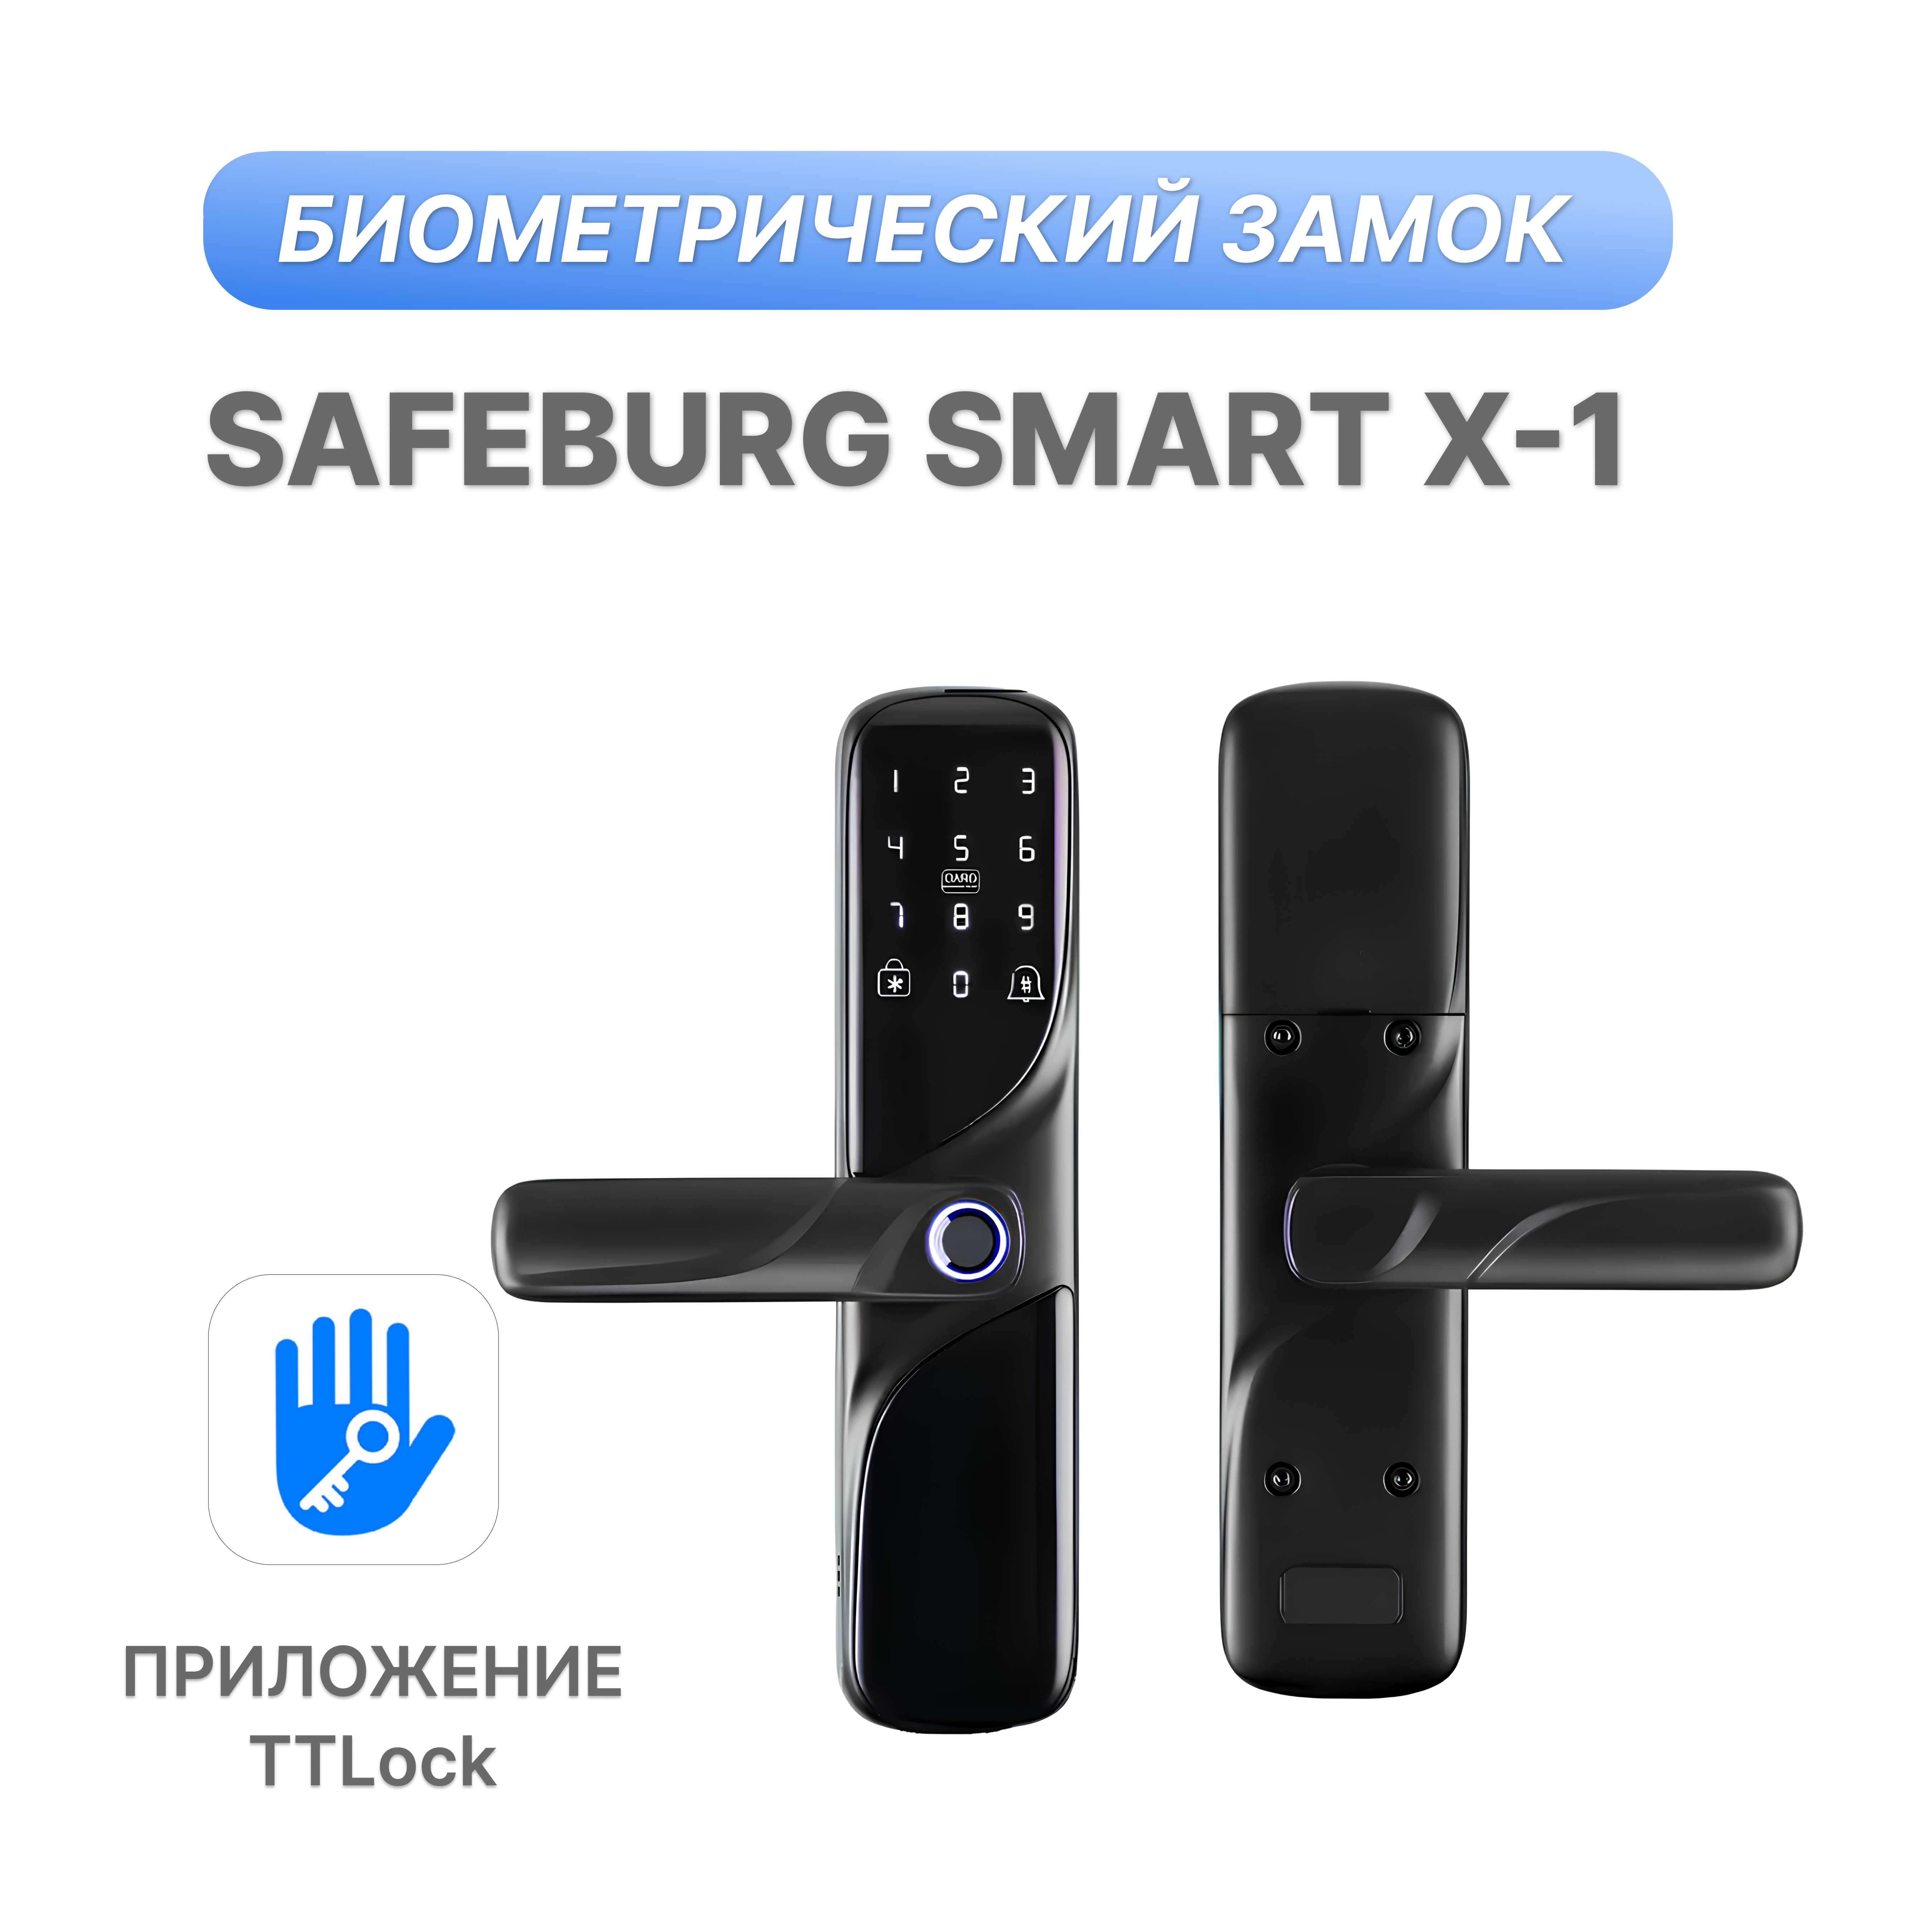 фото Электронный биометрический дверной замок safeburg smart x-1 ,ic-карта в комплект не входит